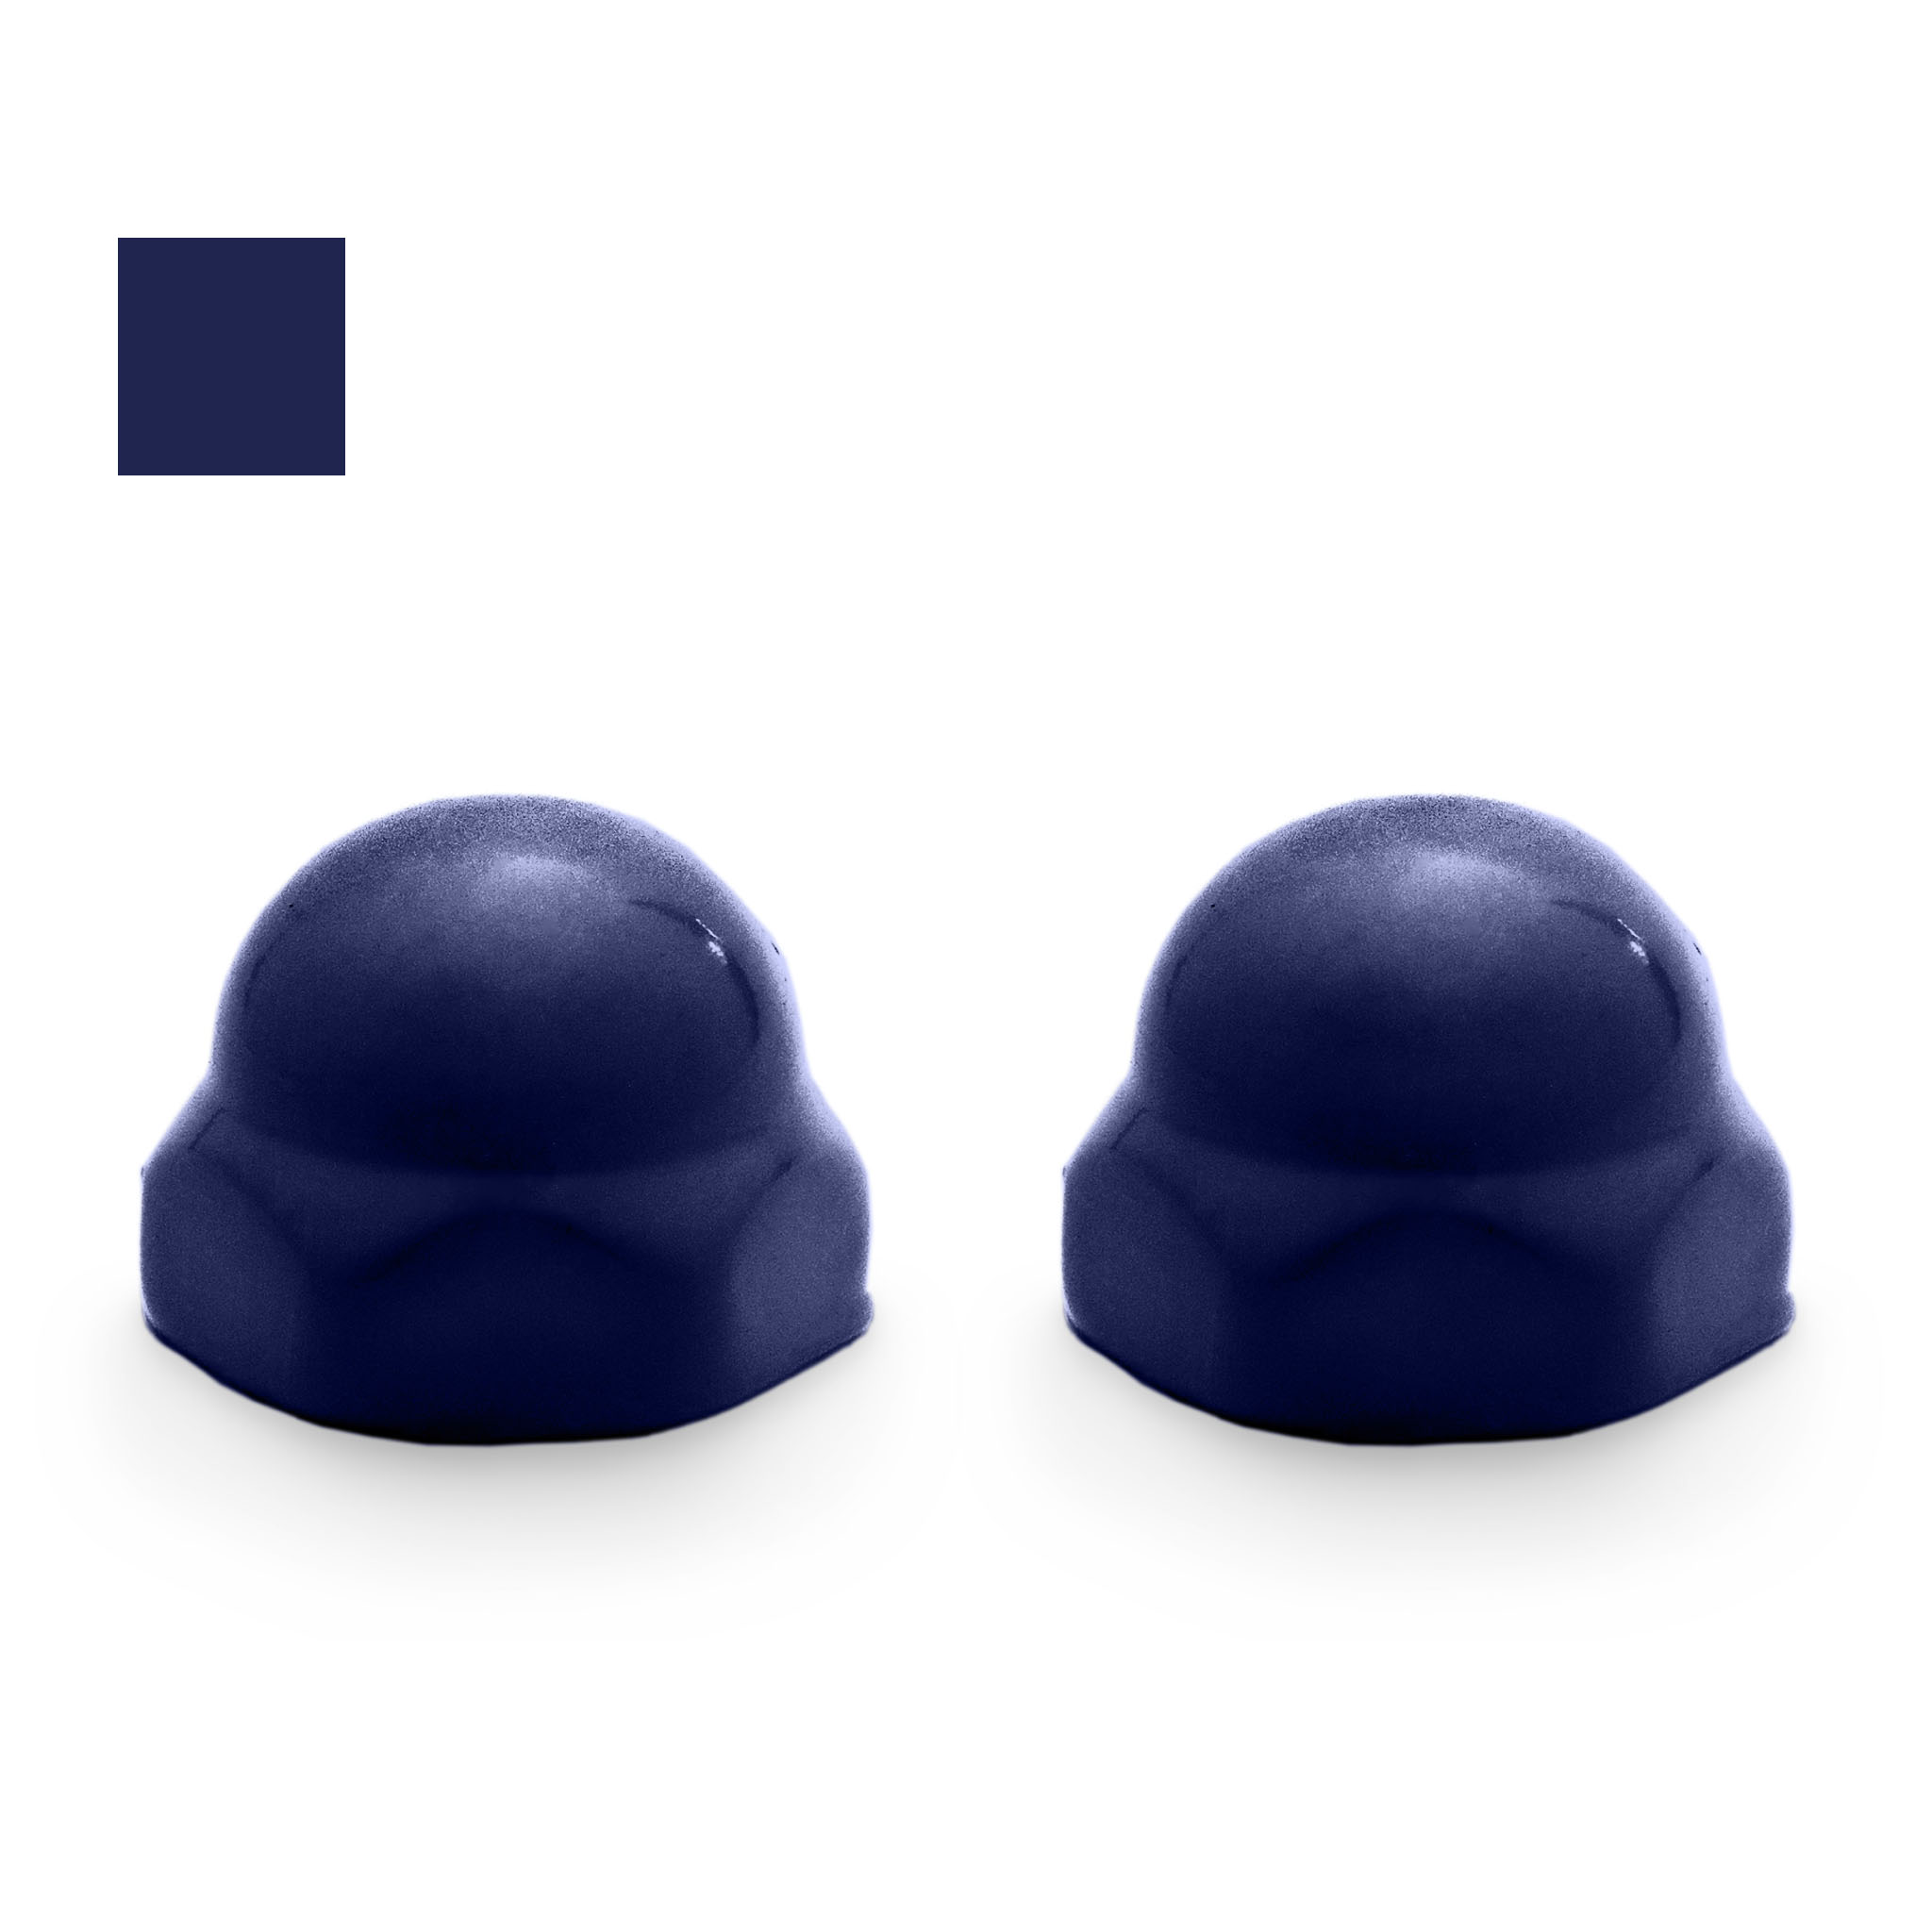 Fixture-Fix American Standard Ceramic Toilet Bolt Caps, Royal Copenhagen Blue, Set of 2